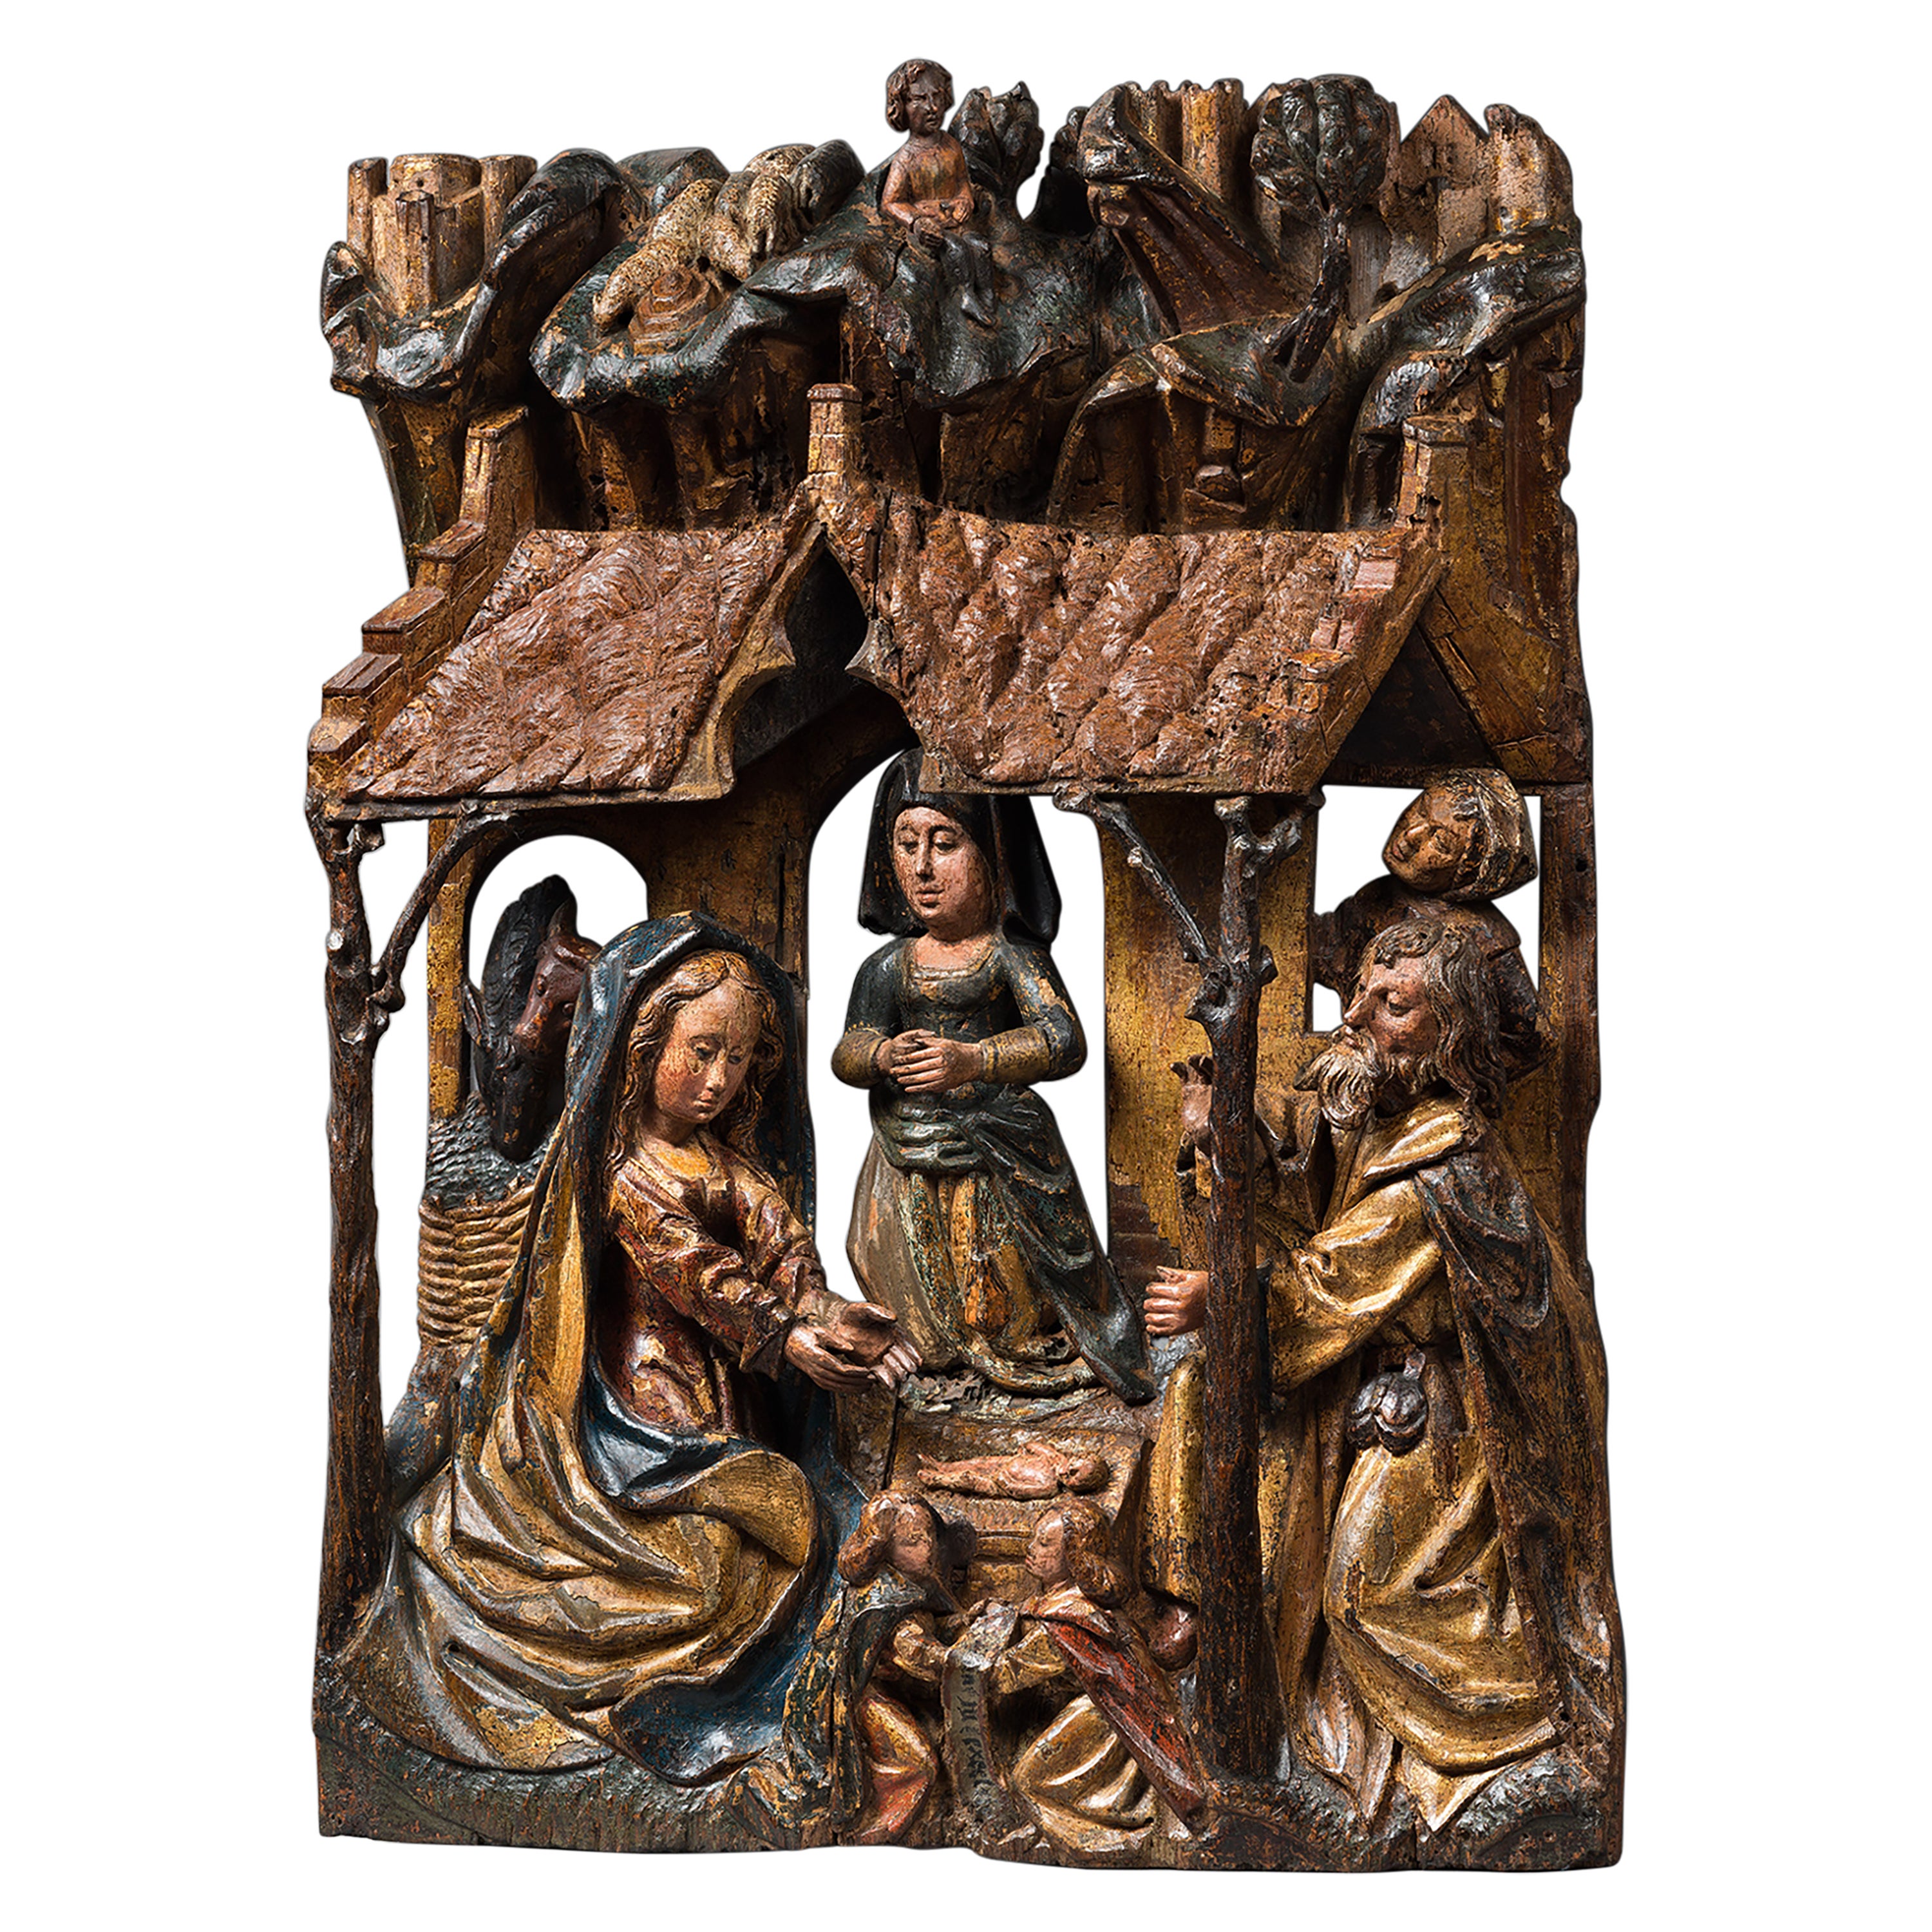 Polychrome Holzschnitzerei des spten 15. Jahrhunderts, die Neuheit darstellt